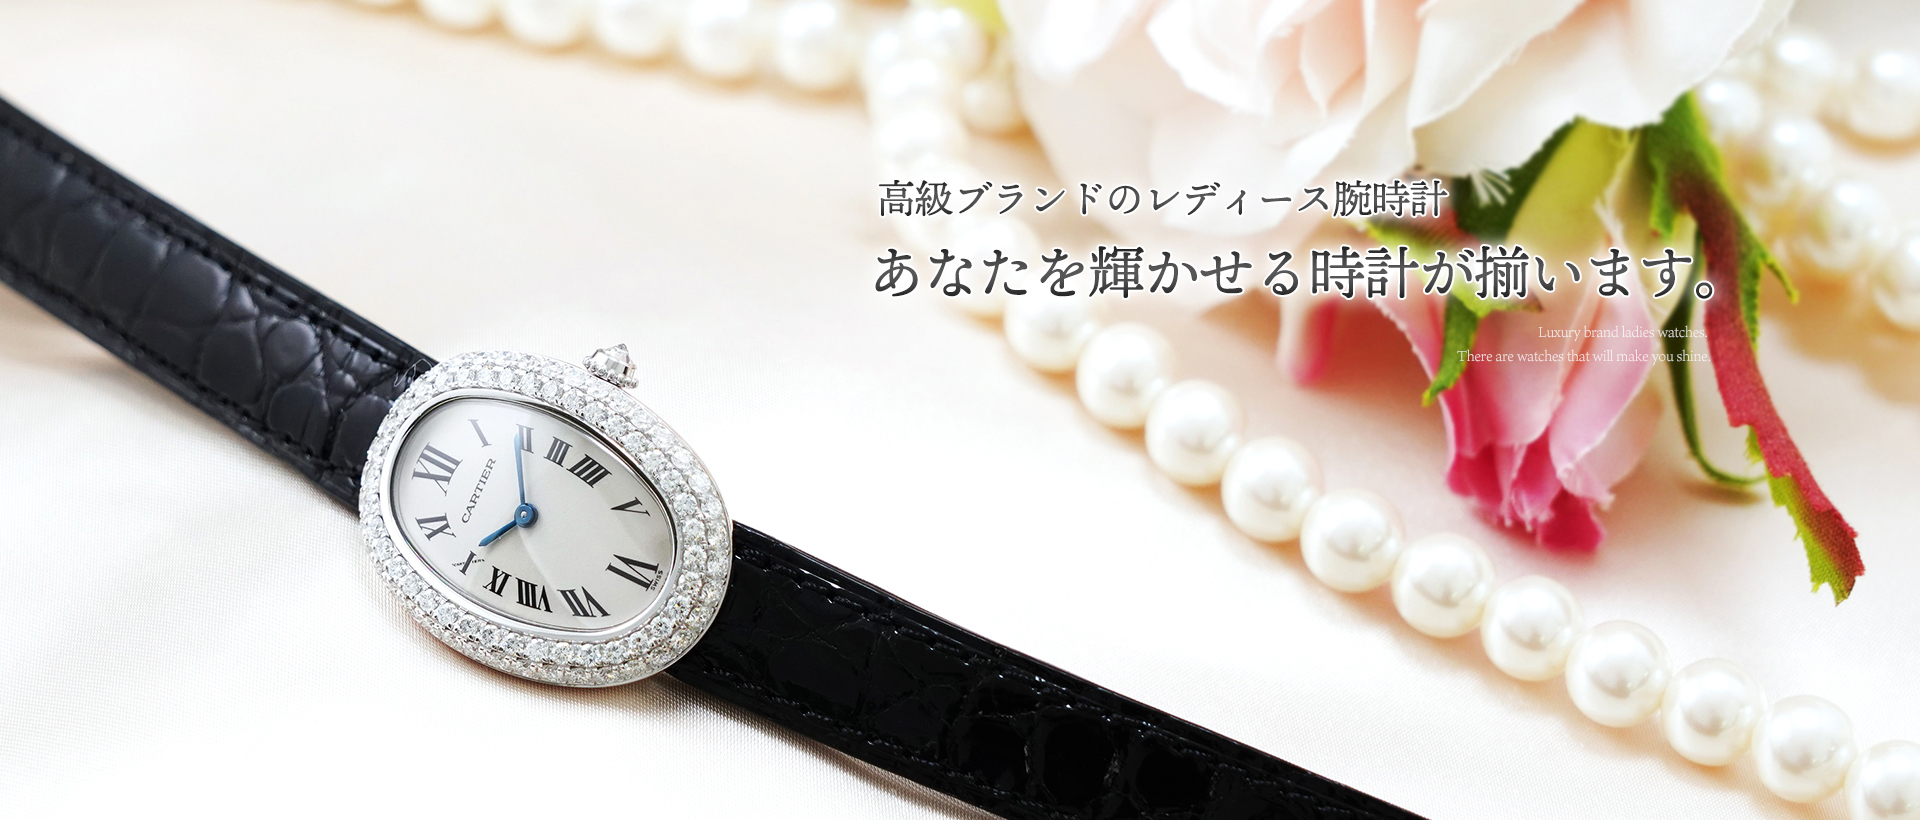 高級ブランドのレディース腕時計 あなたを輝かせる時計が揃います。